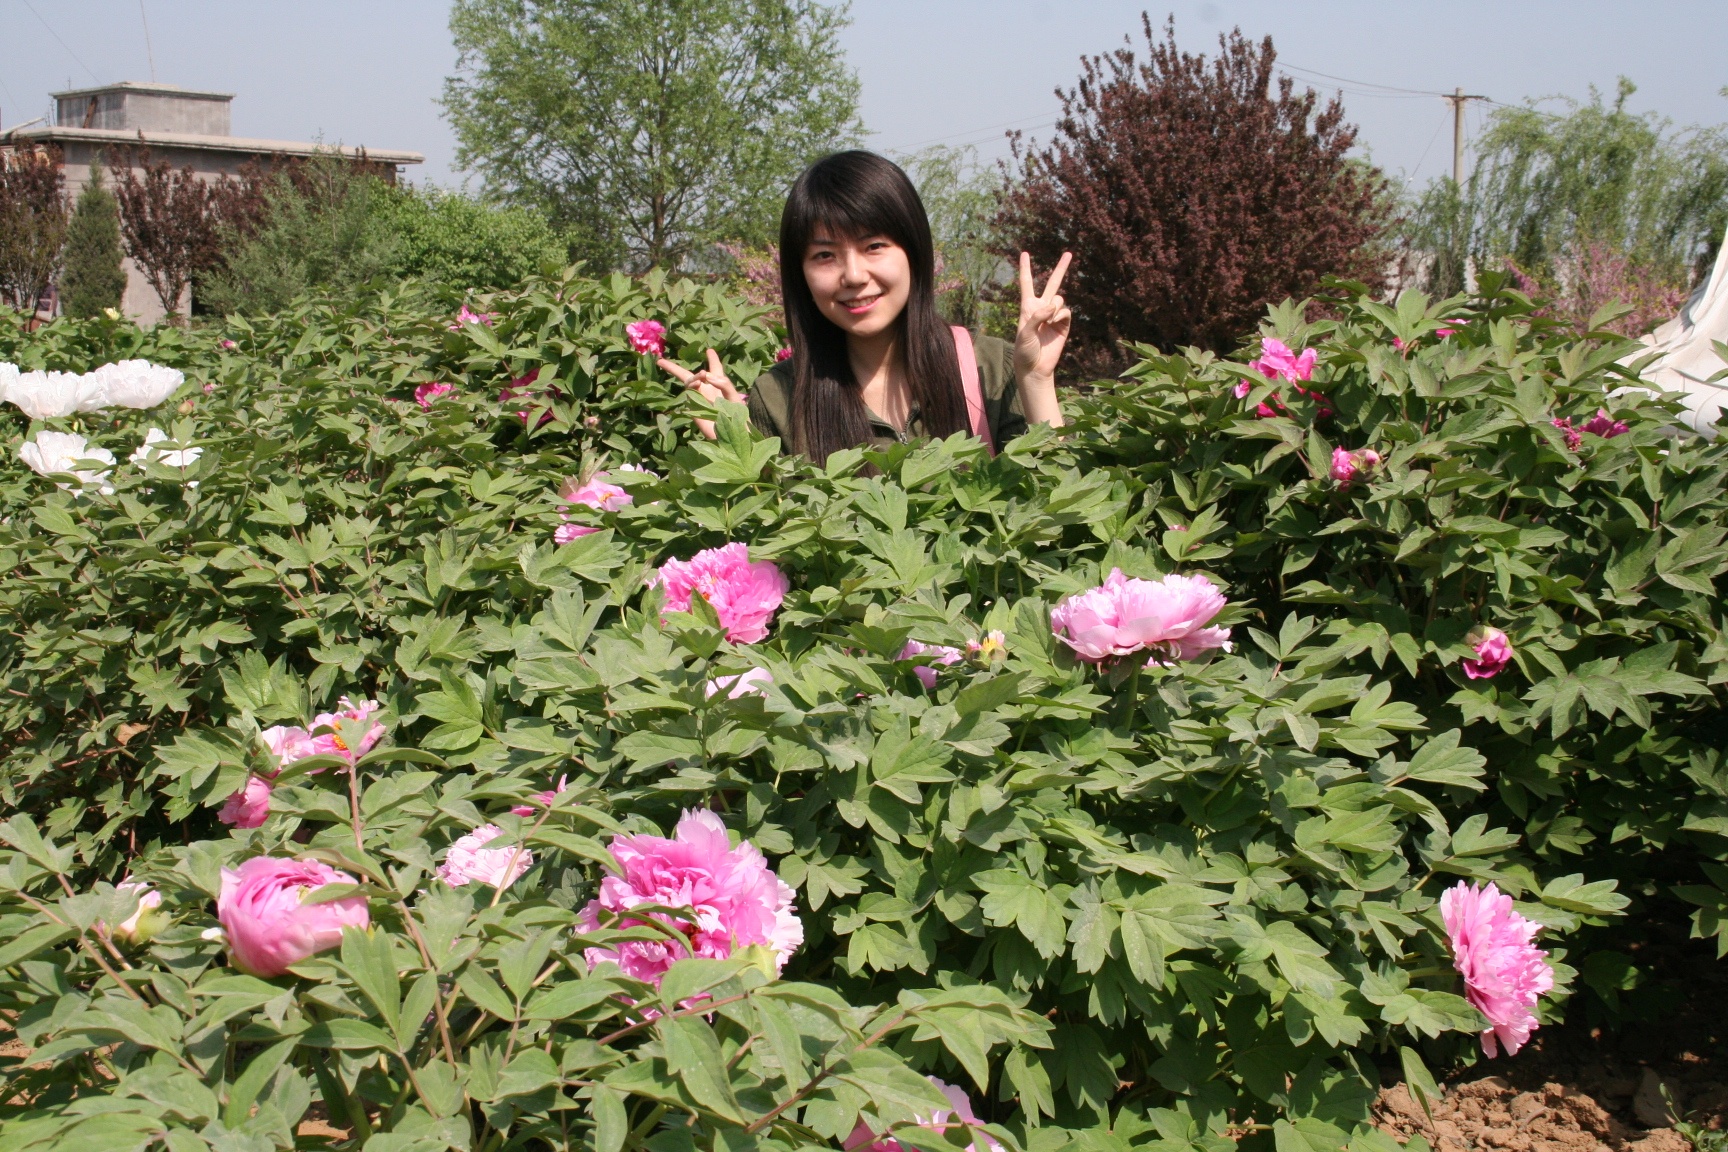 汉牡丹园位于河北省邢台市柏乡县城北五公里。园区占地面积520亩